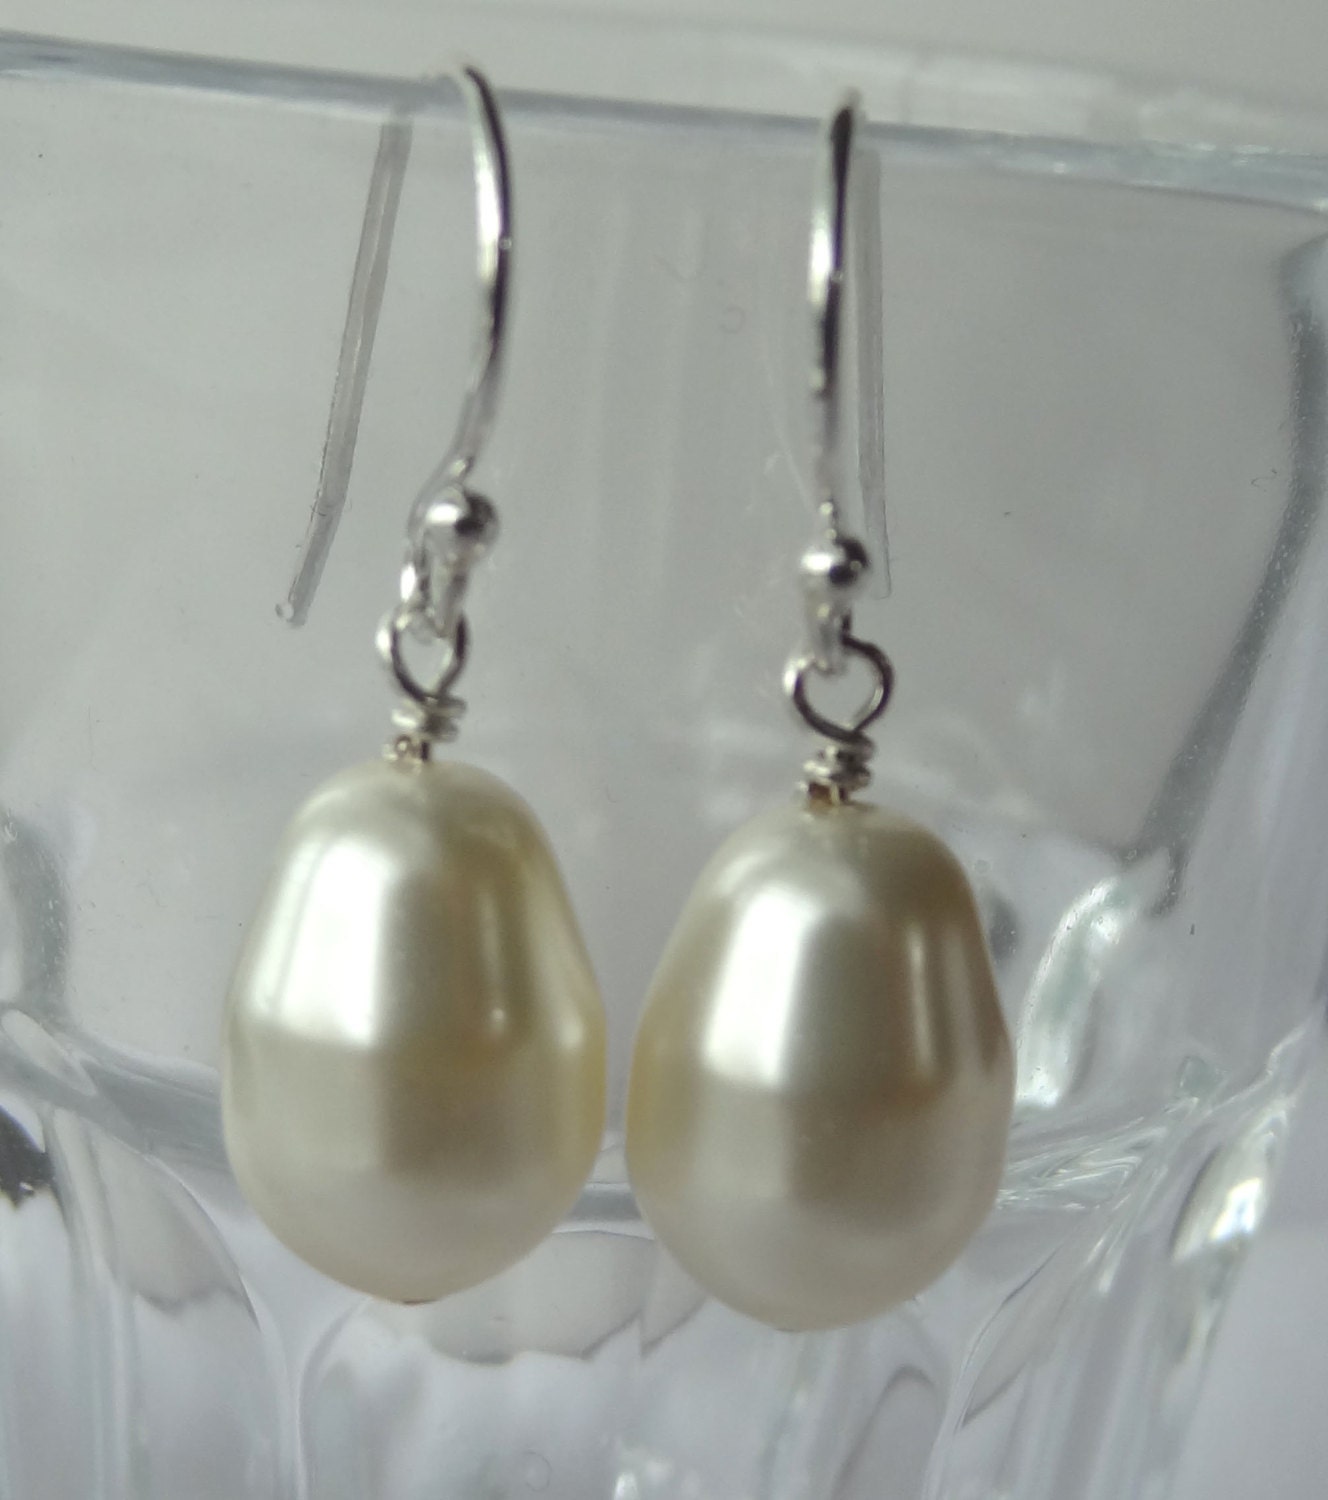 Crystal Pearl Leaves Cap Earrings,Bridesmaid Pearl Earrings,Pearl Earrings,Flower Pearl Earrings,Leaves Dangle,Bridal Wedding Pearl Earrings